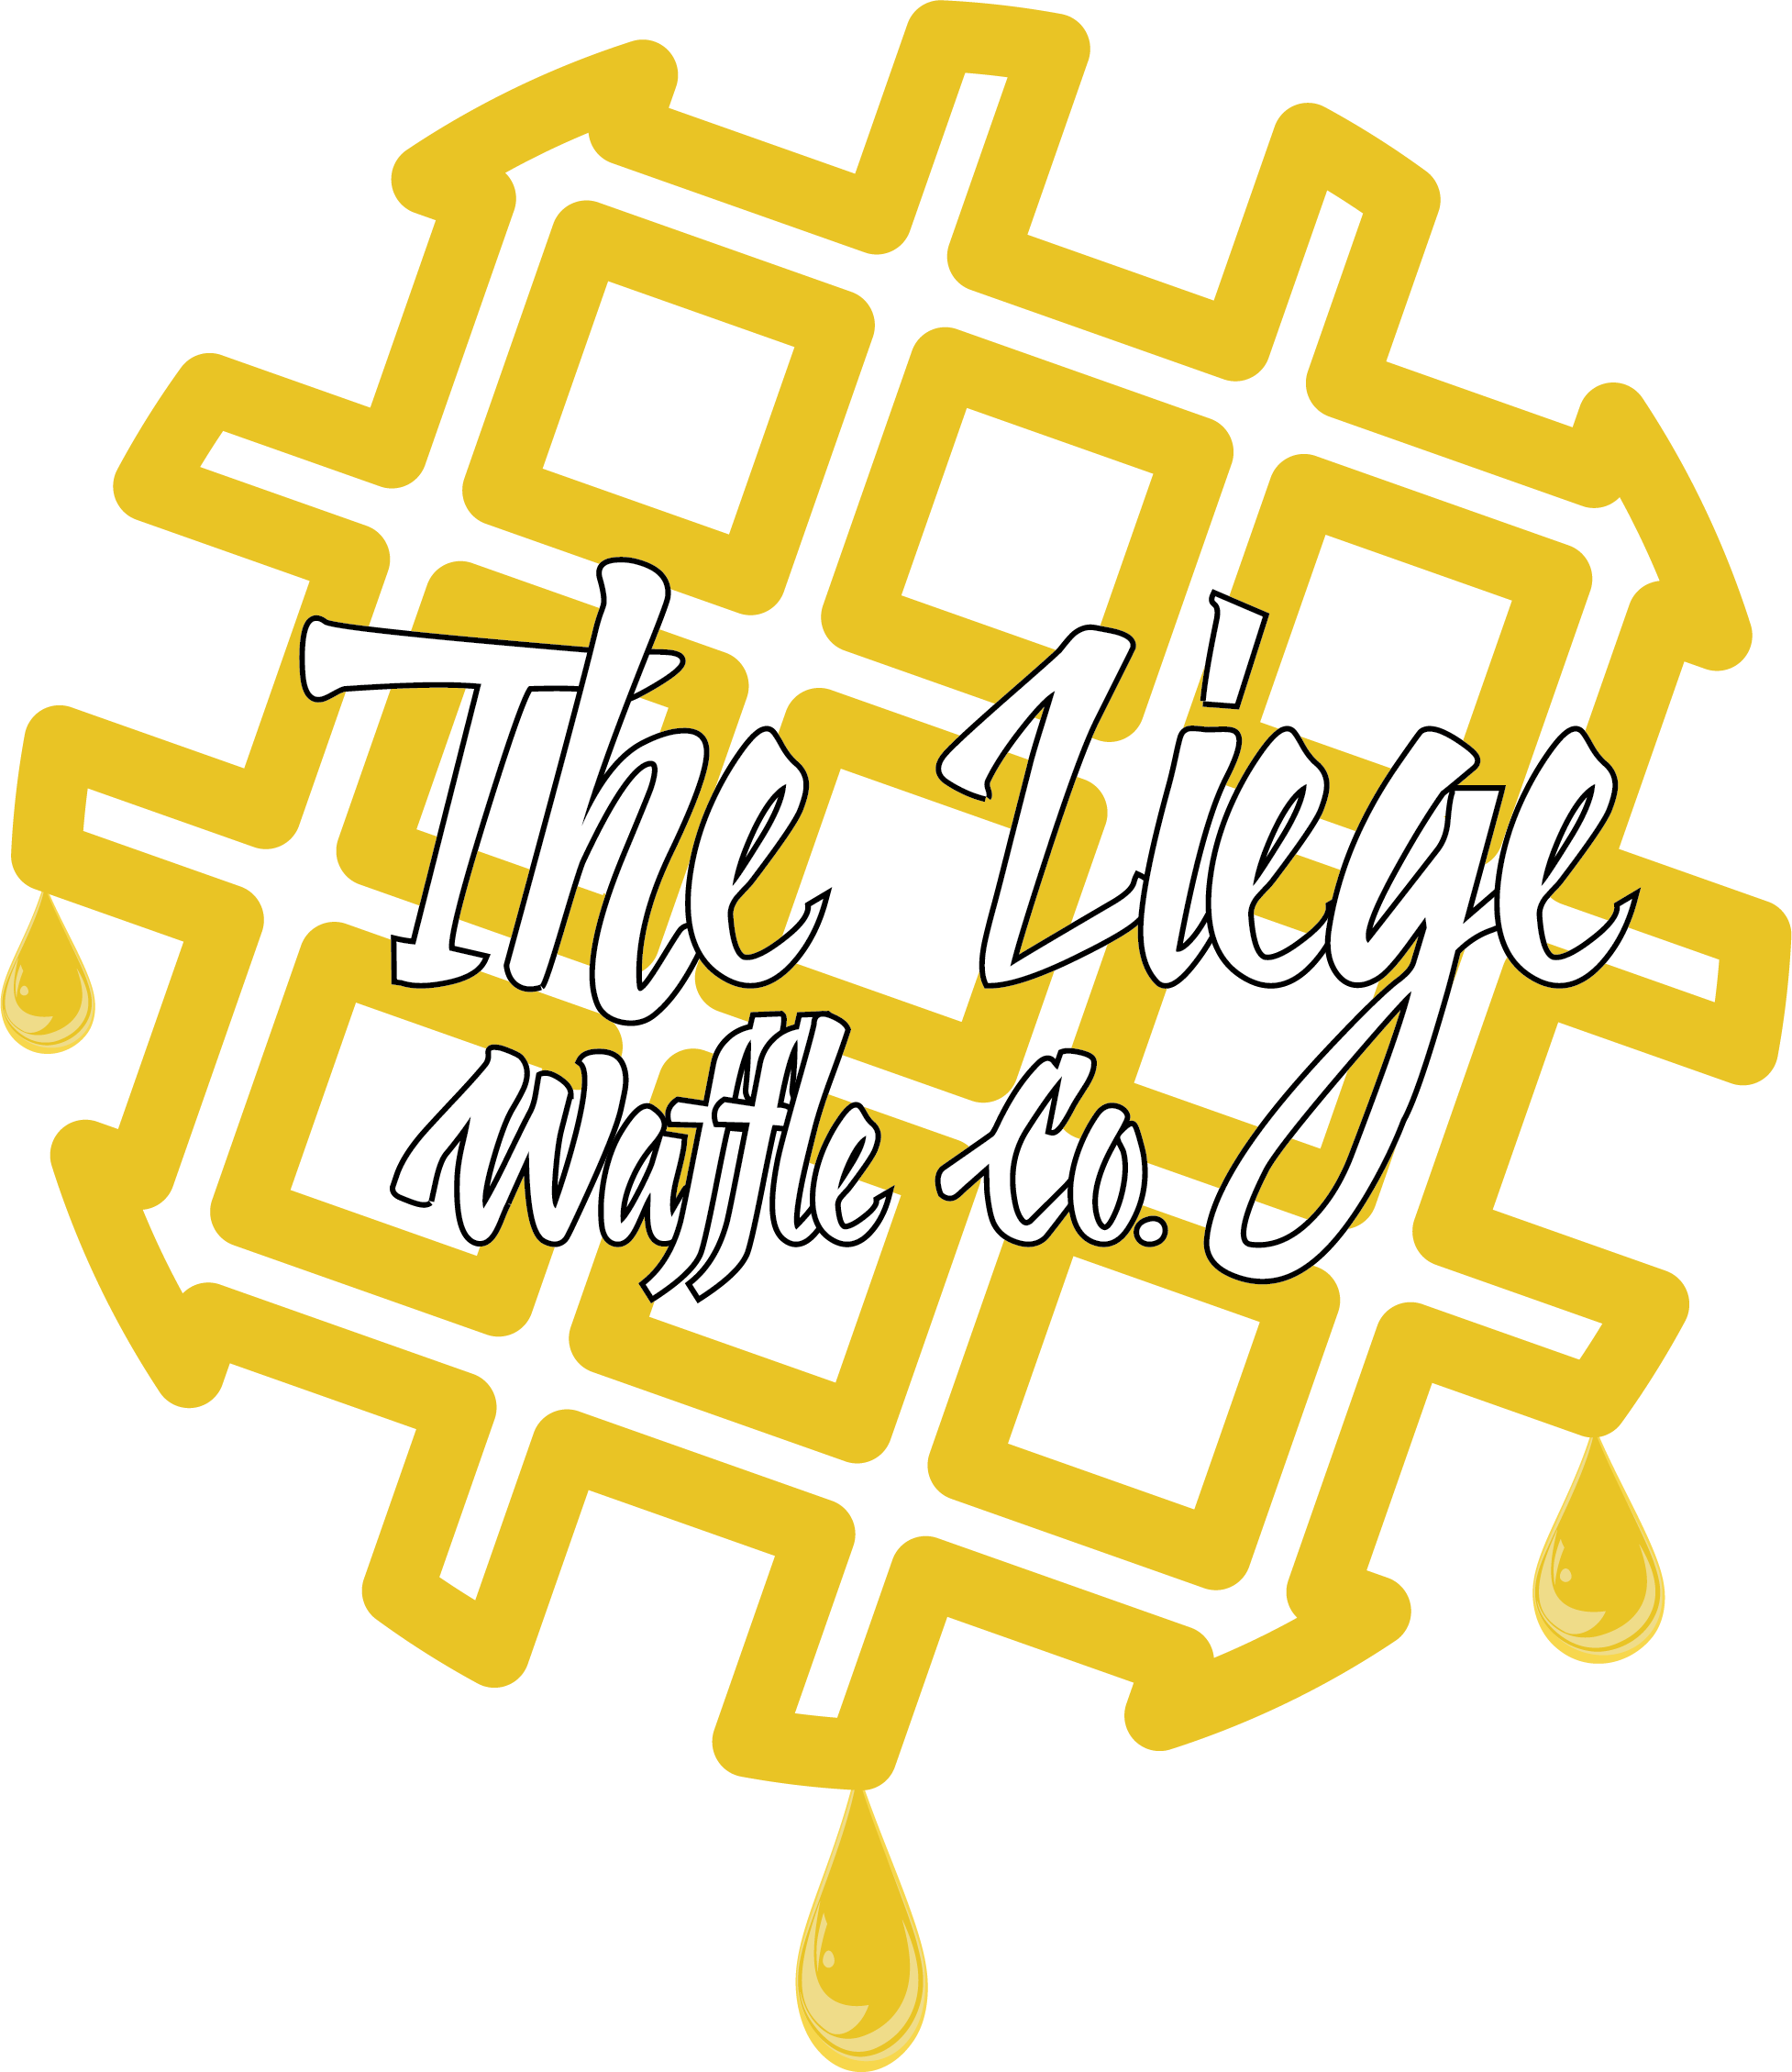 The Liege Waffle Co.